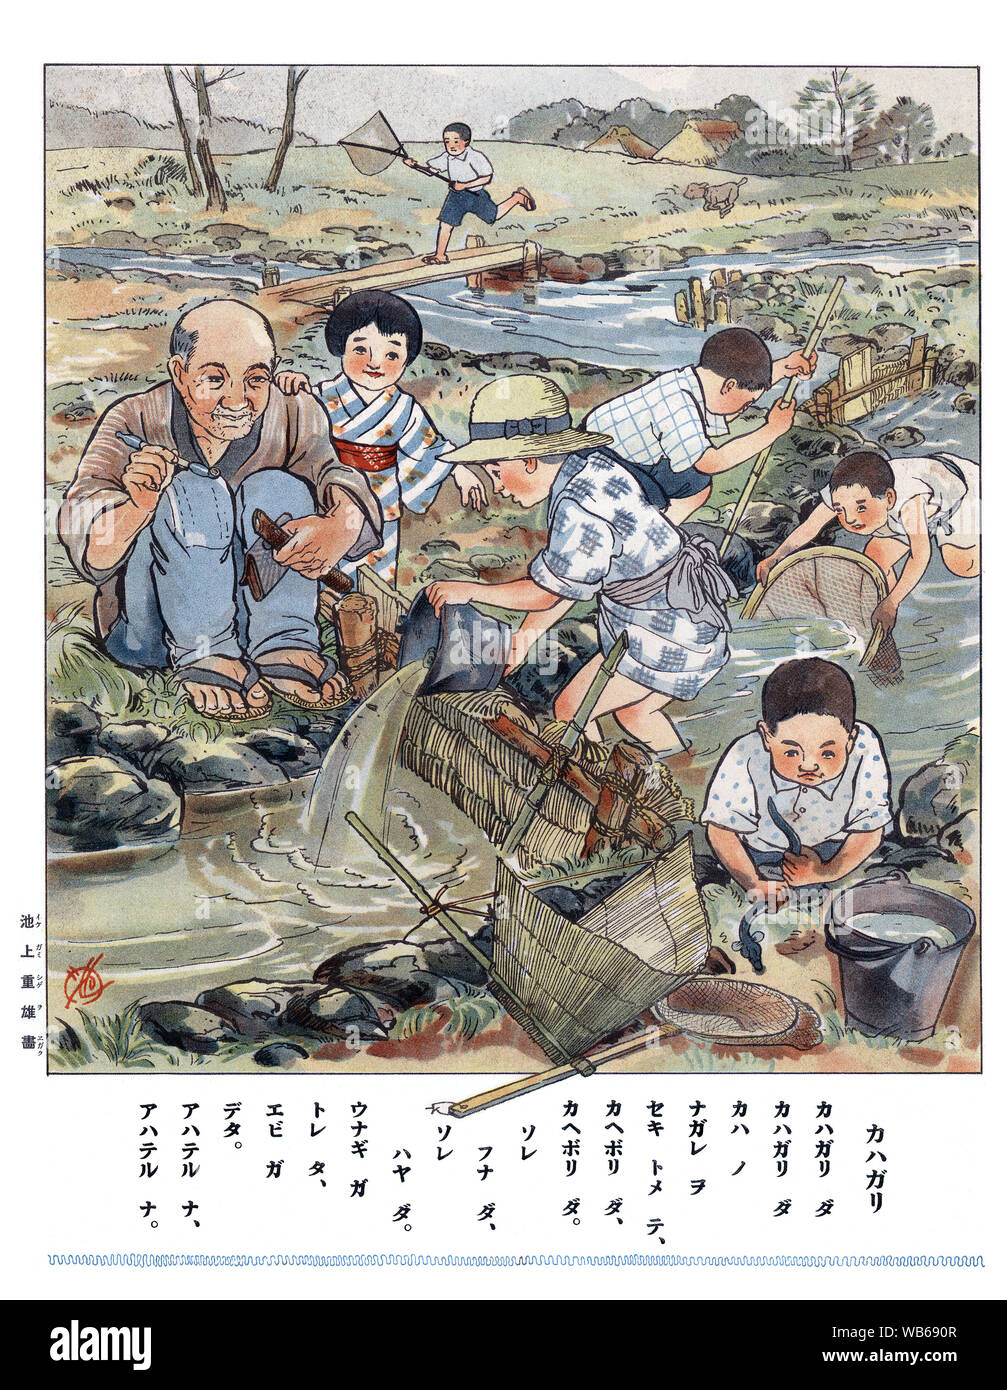 [ 1930 - Japon Japonais Illustration d'enfants jouant dans la rivière ] - une impression avec verset pour les enfants de l'école élémentaire montrant des enfants jouant le long d'un ruisseau. 20e siècle vintage illustration de livre. Banque D'Images